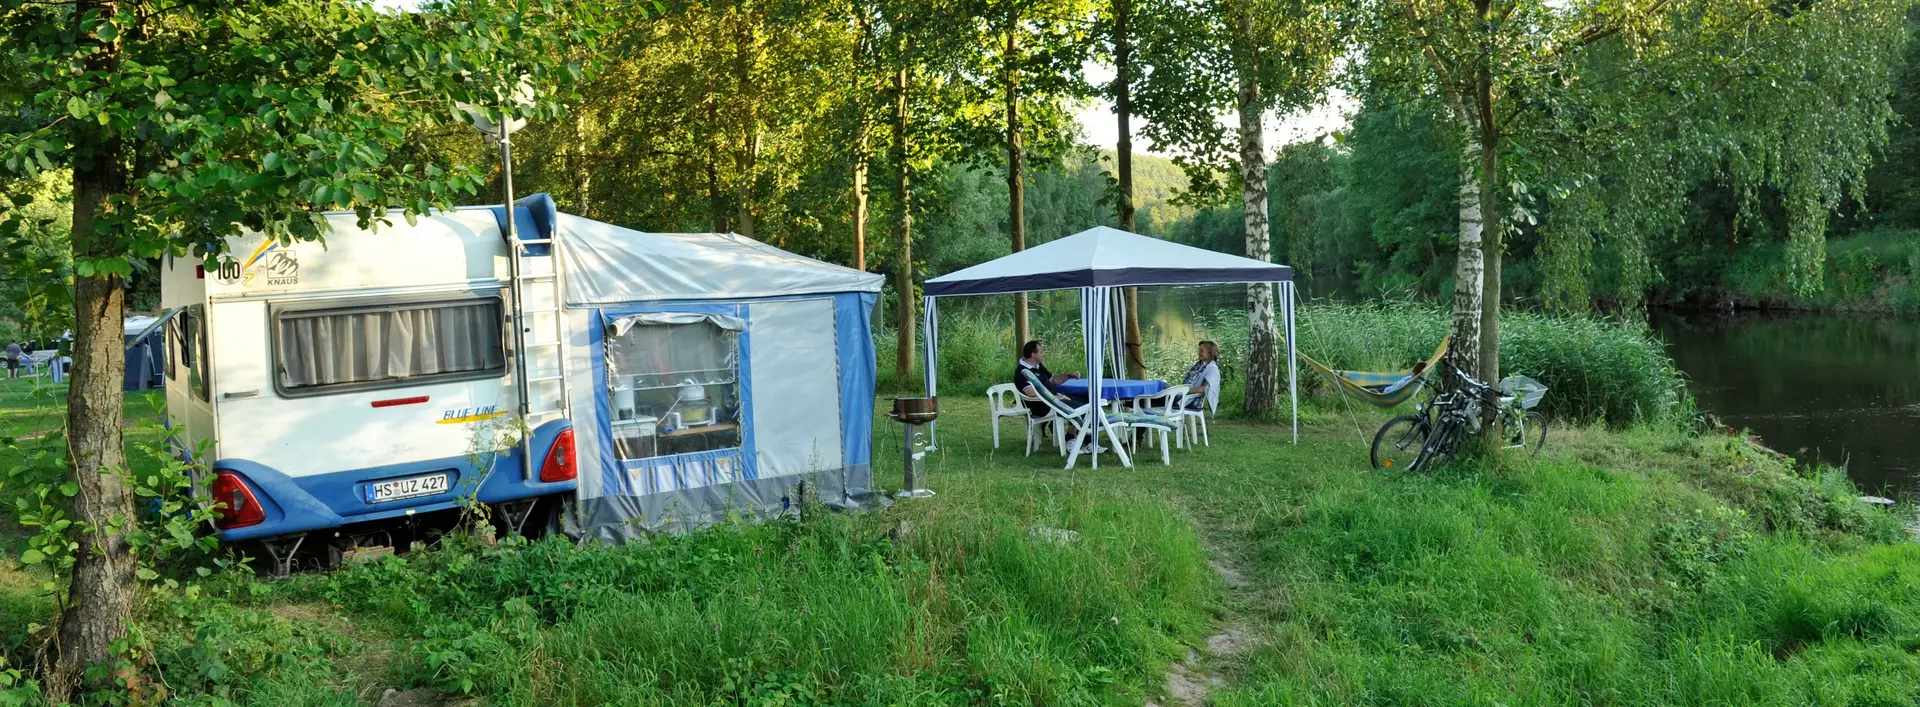 Wohnmobil auf Campingplatz im Grünen im Sommer auf dem Land